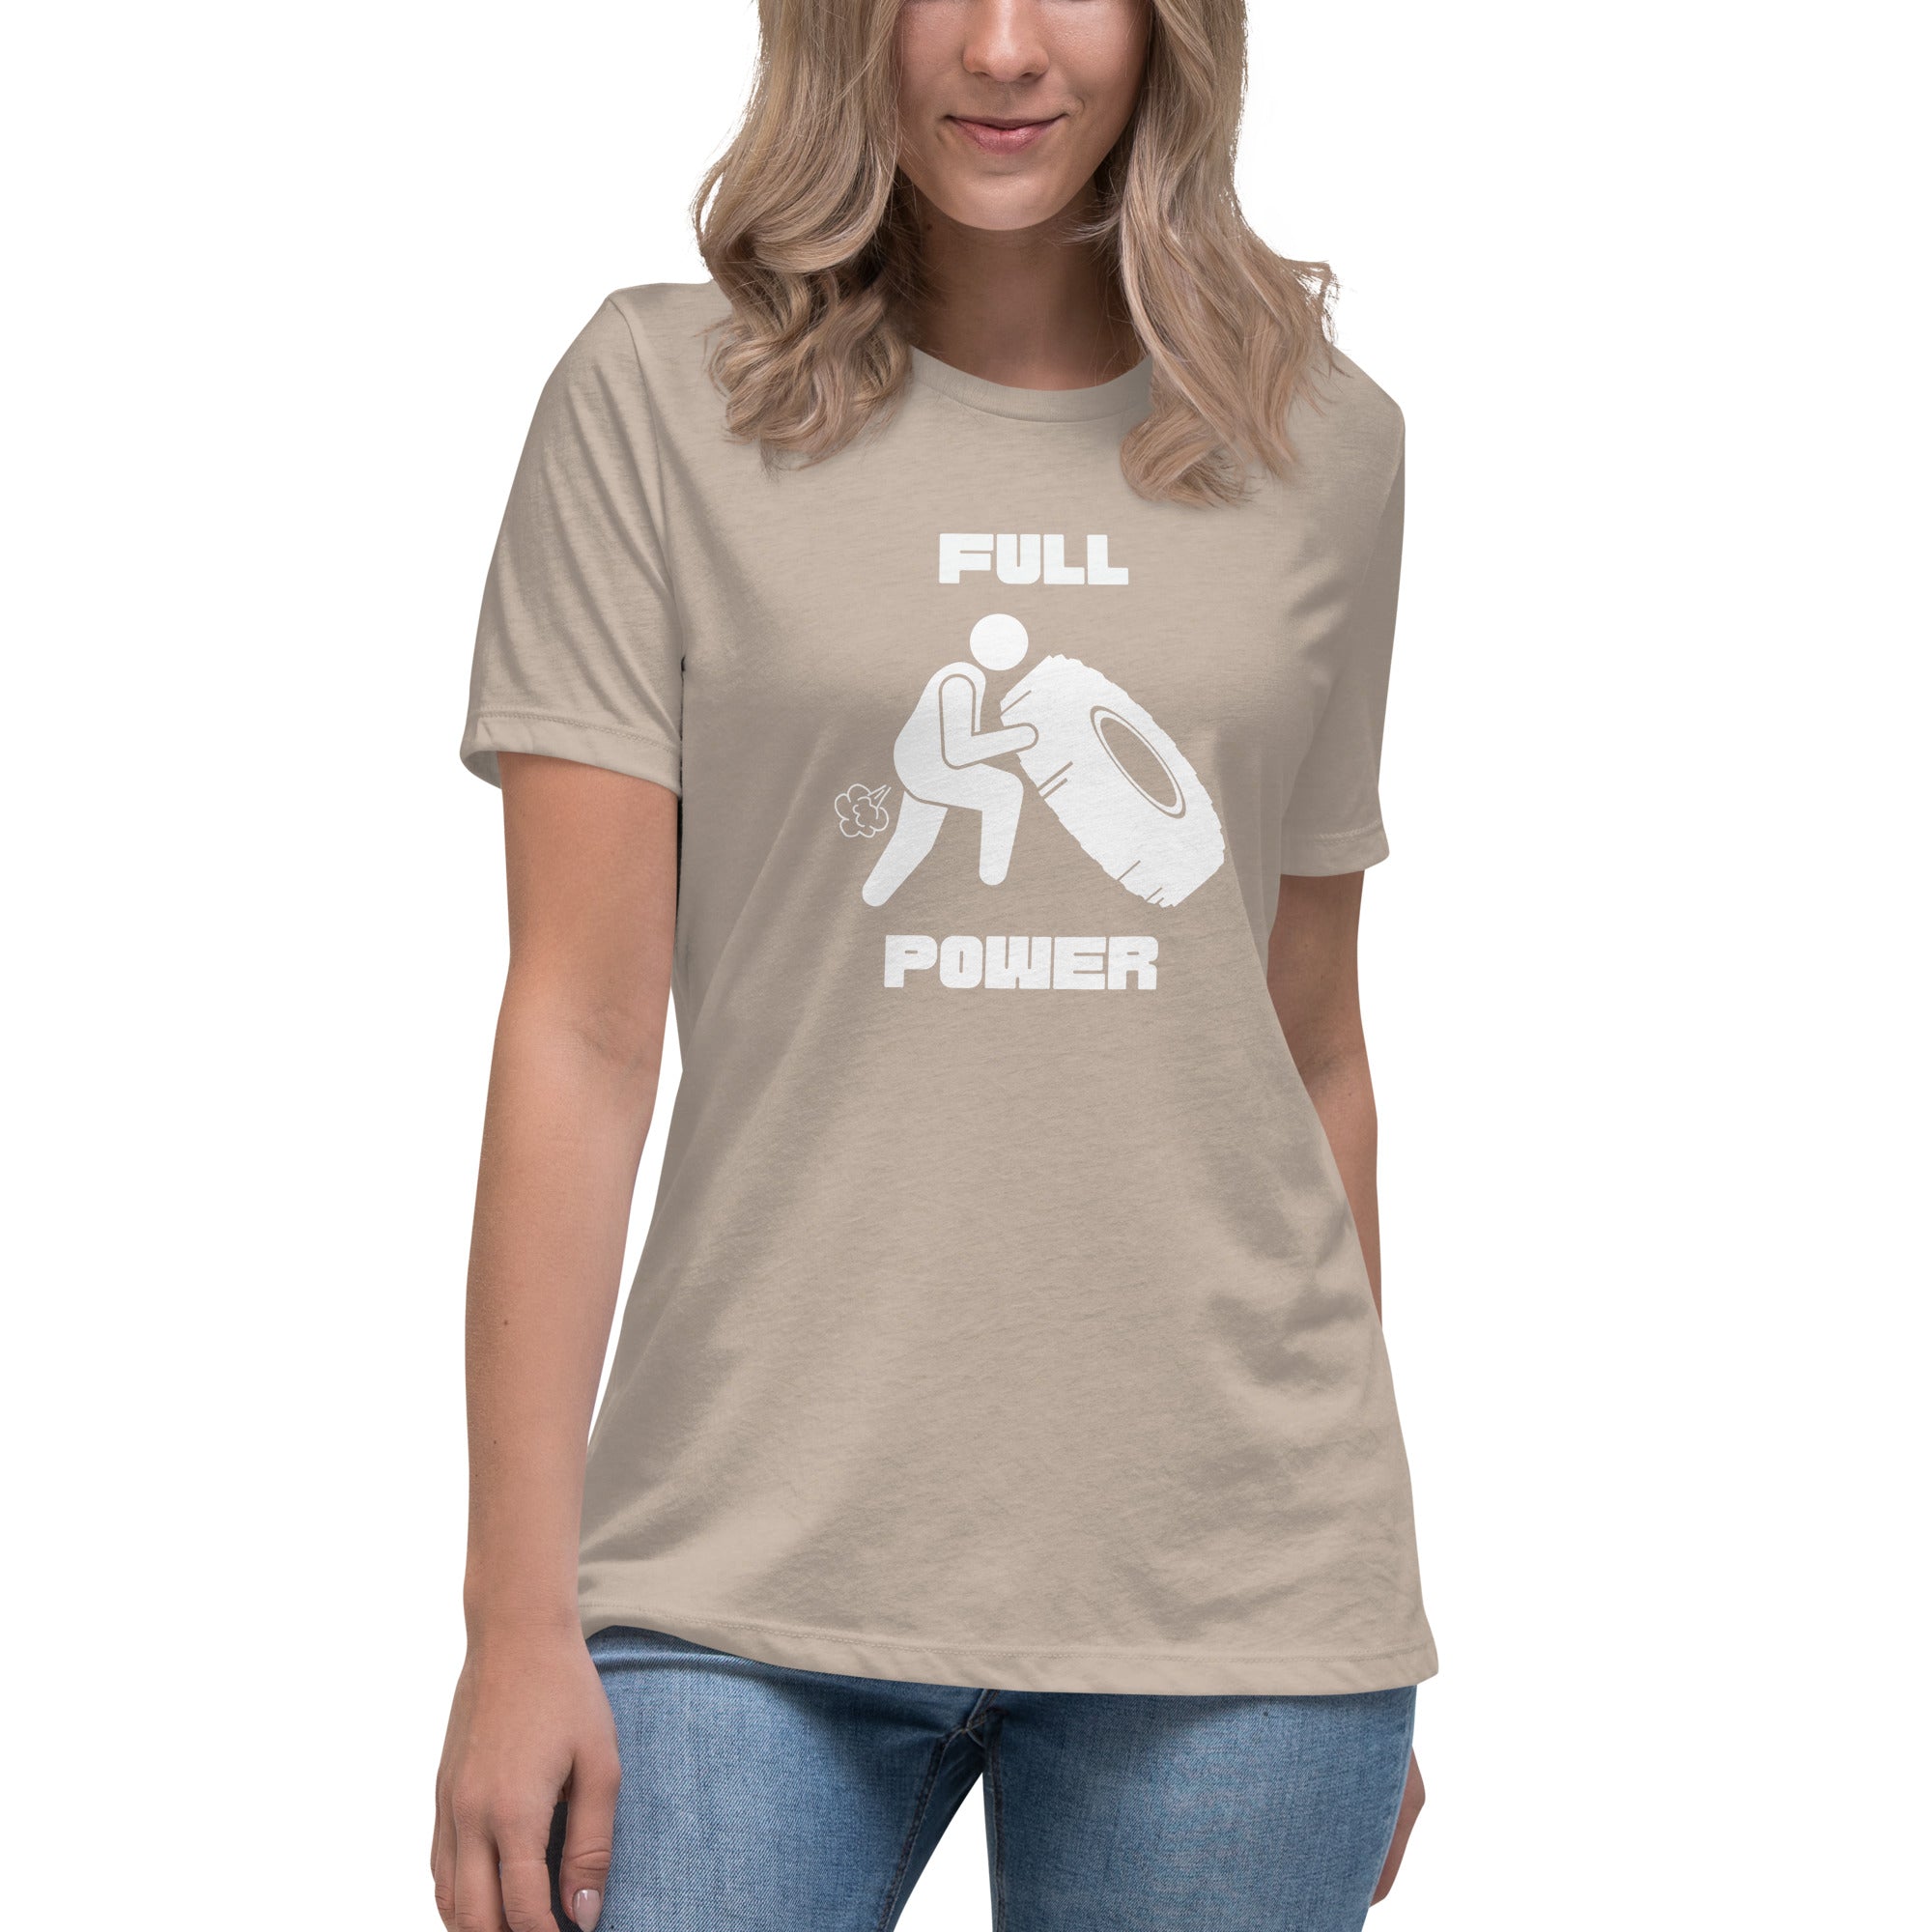 Full Power Women's Premium T-Shirt